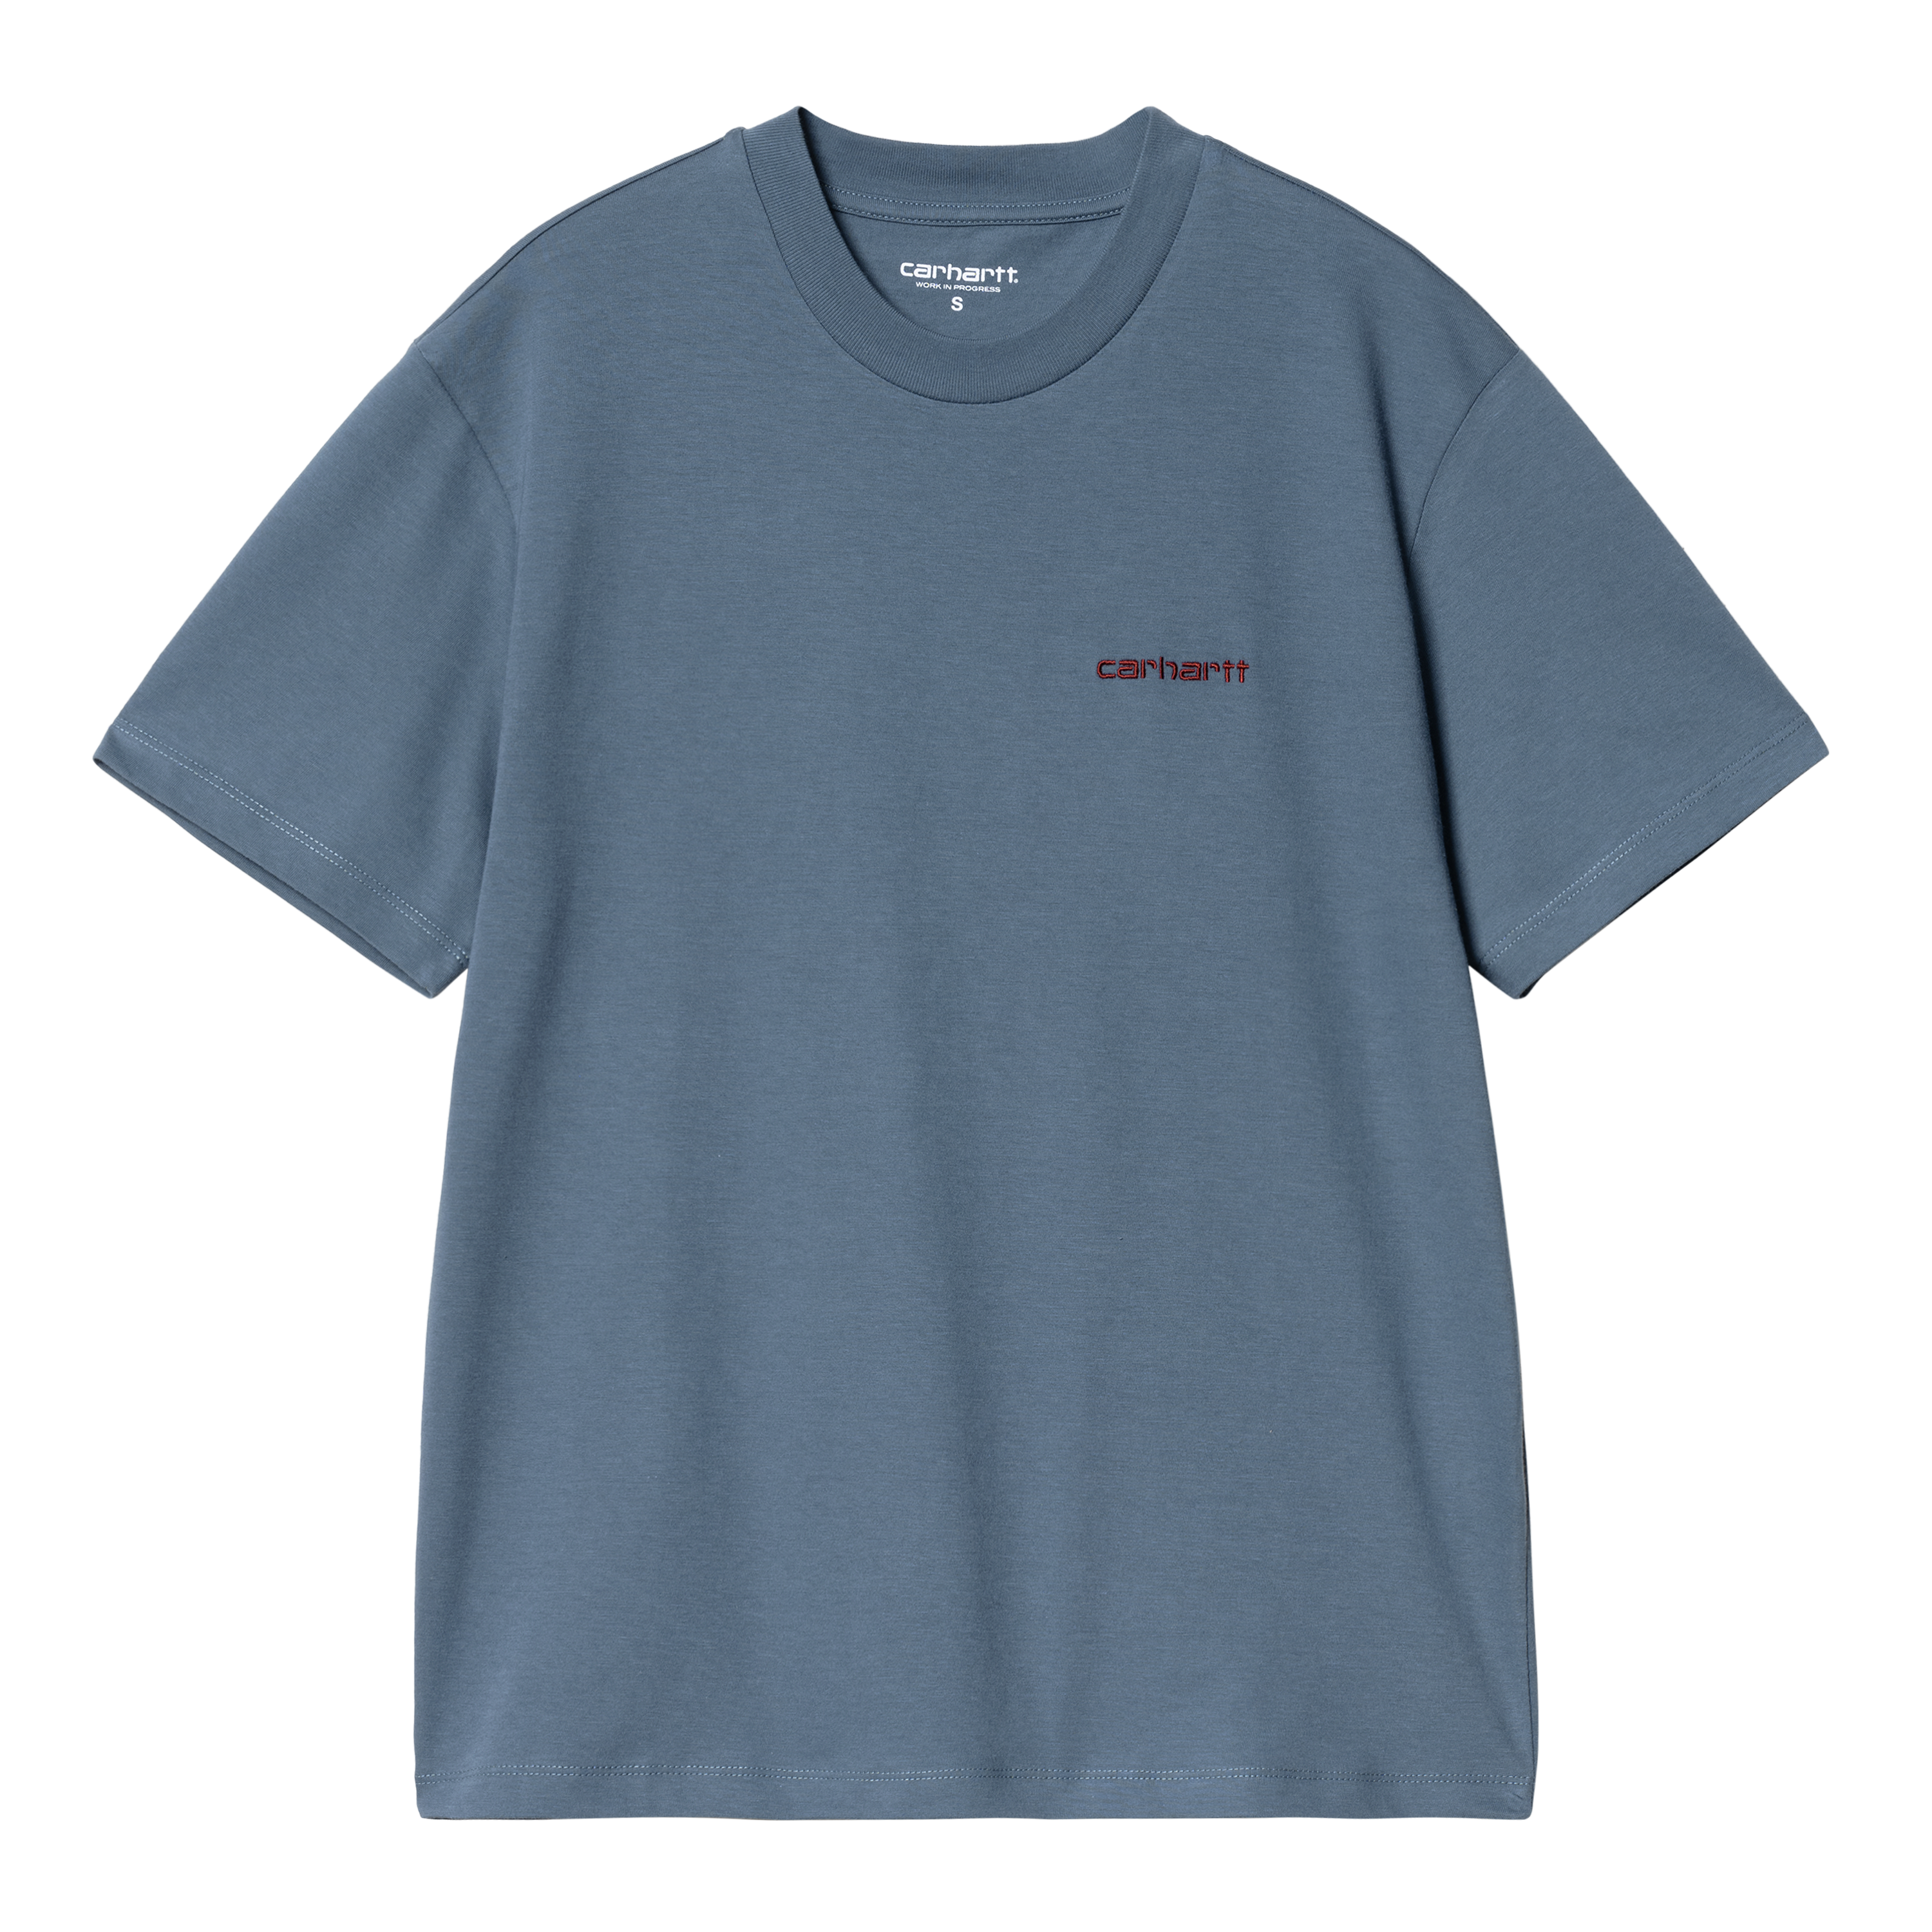 Carhartt WIP Women’s Short Sleeve Script Embroidery T-Shirt in Blu